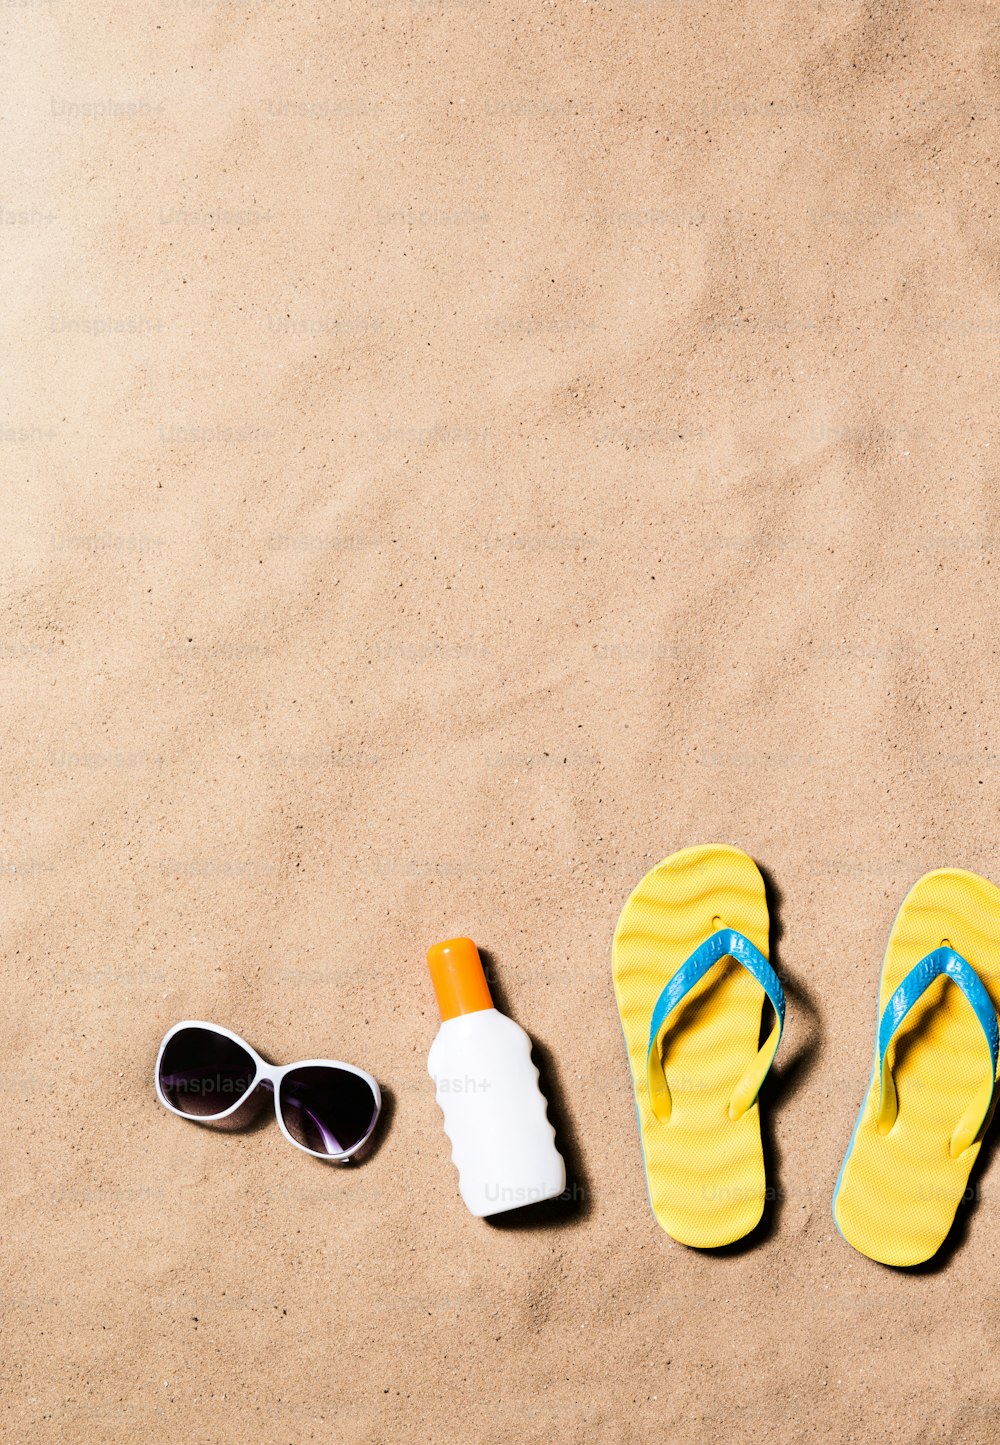 Composizione per le vacanze estive con un paio di sandali infradito gialli, occhiali da sole e crema abbronzante su una spiaggia. Sfondo spiaggia di sabbia, scatto in studio, flat lay. Copia spazio.